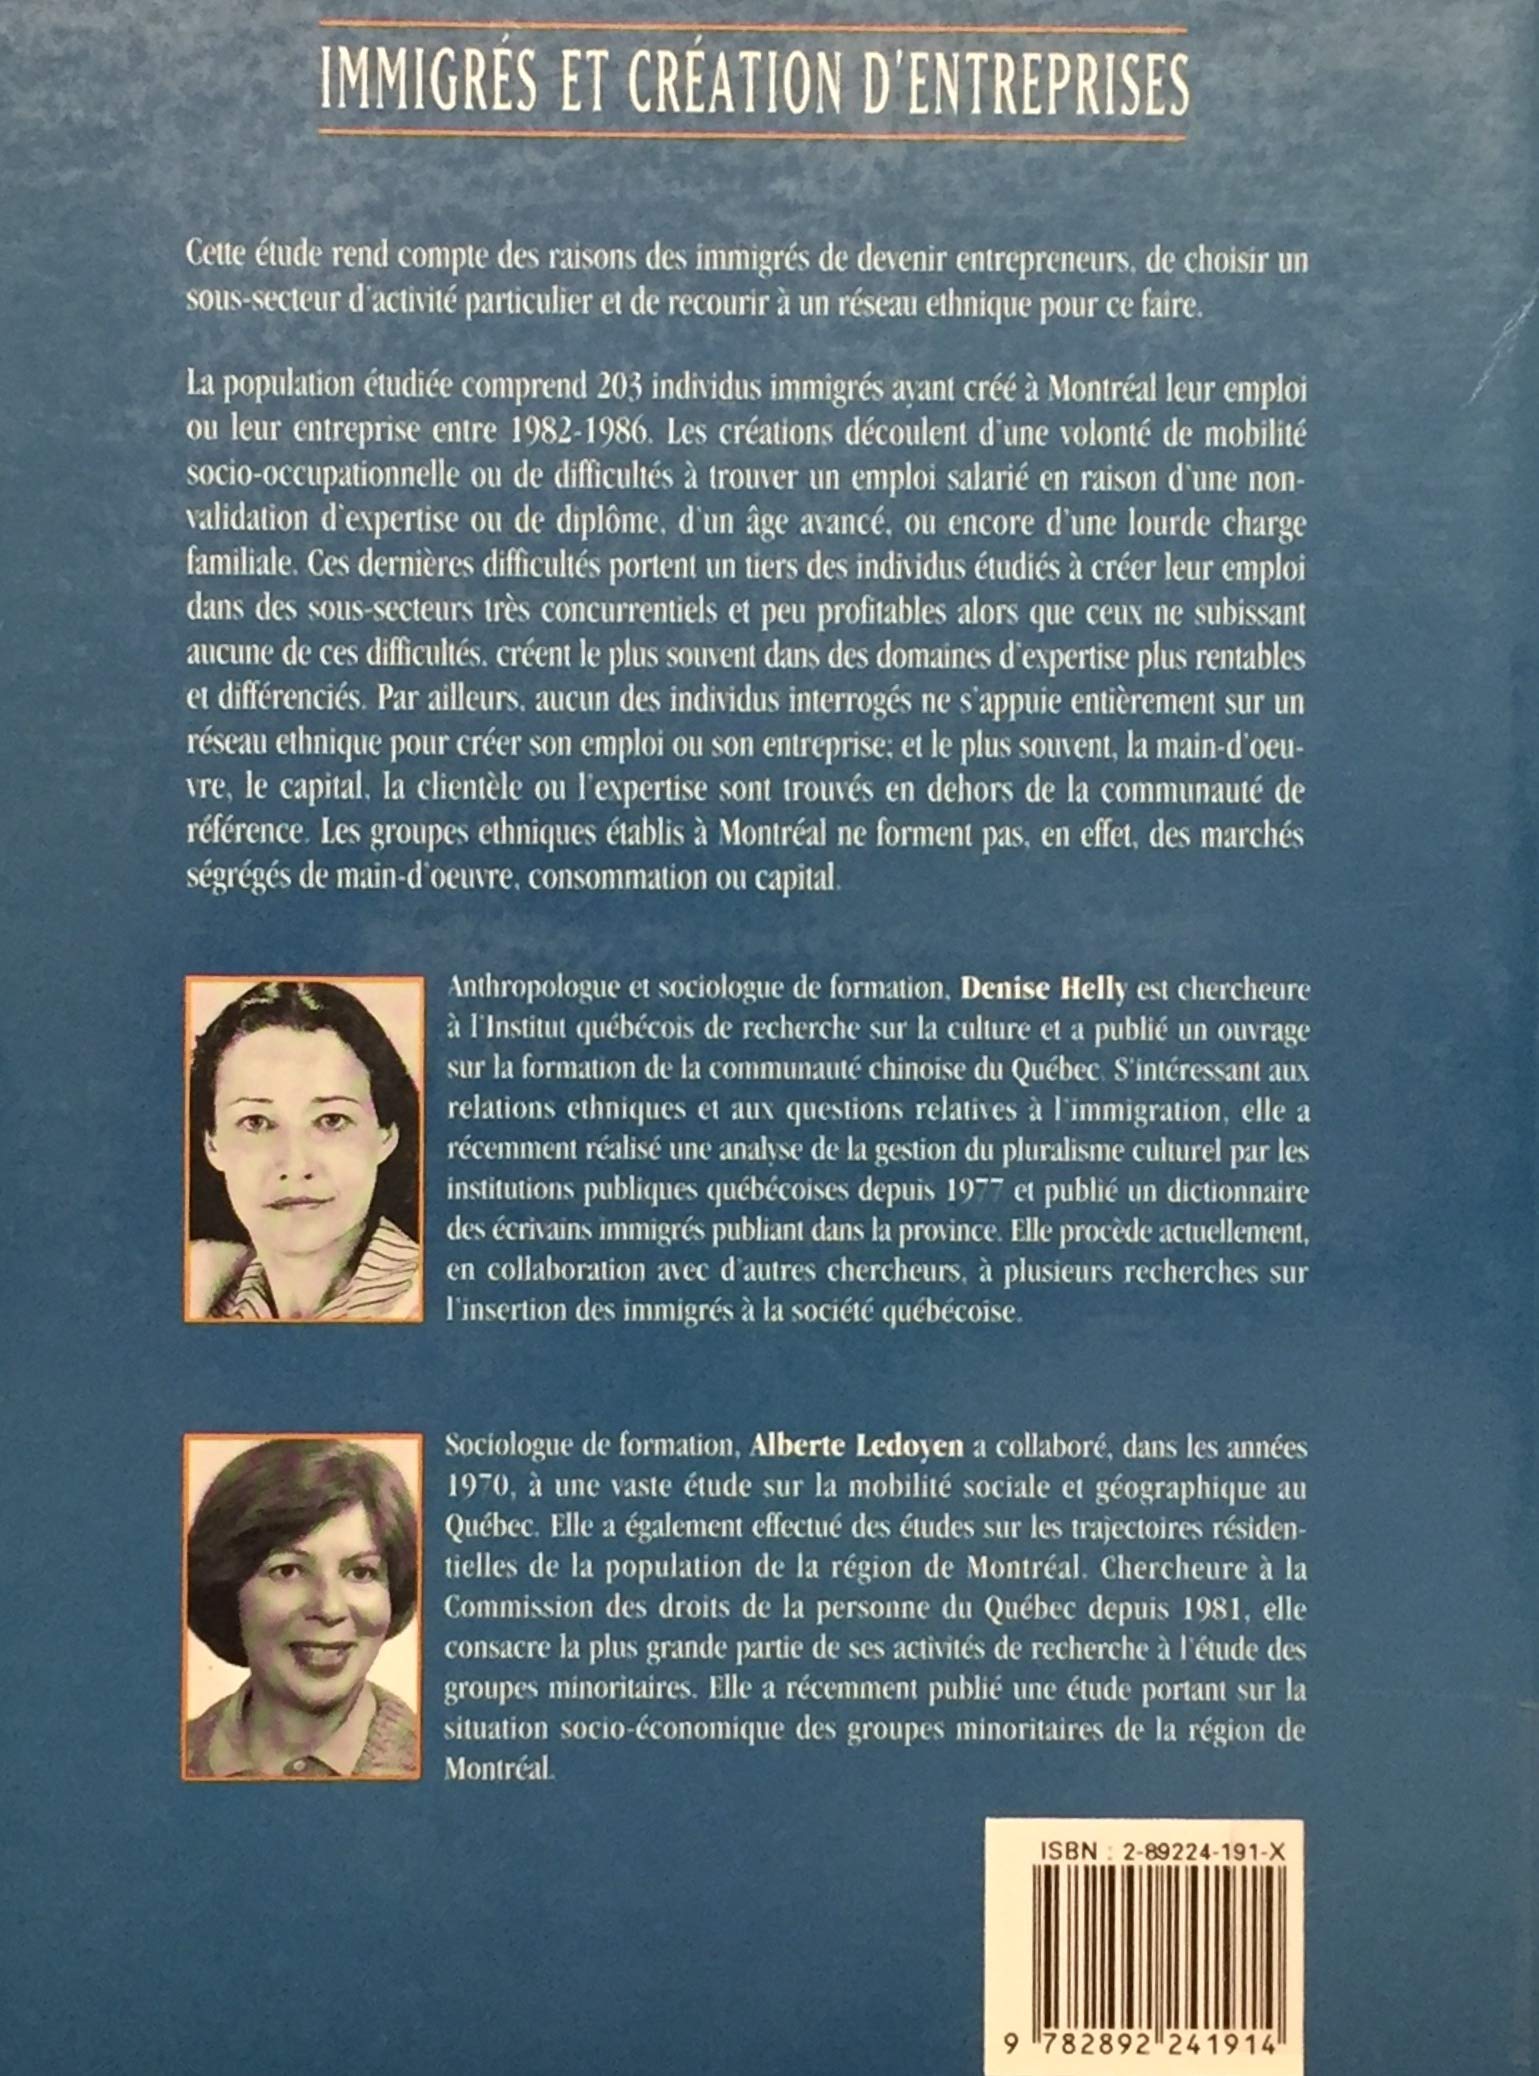 Immigrés et création d'entreprises (Montréal 1990) (Denise Helly)